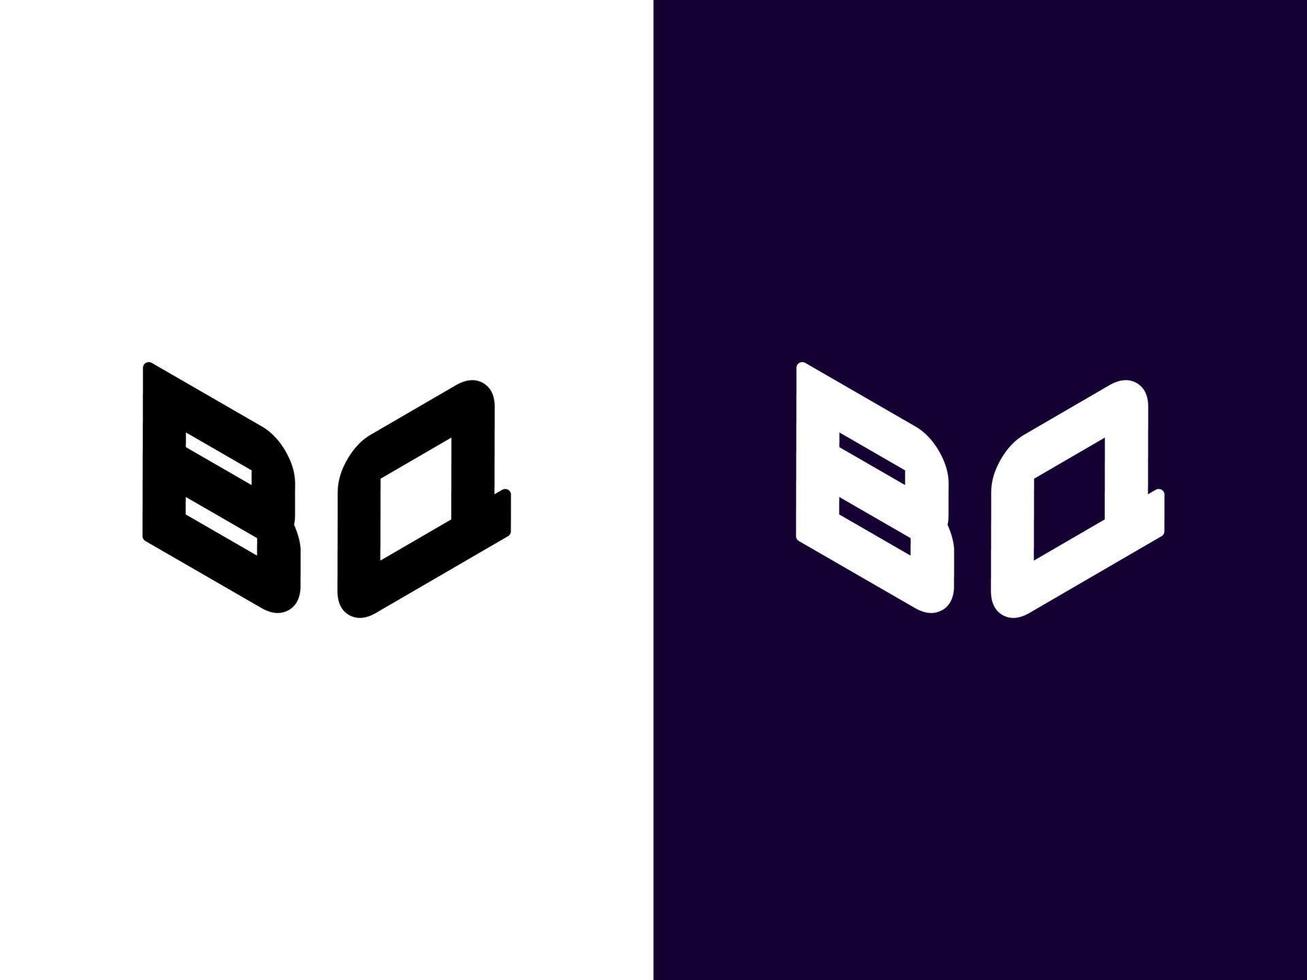 anfangsbuchstabe bq minimalistisches und modernes 3d-logo-design vektor